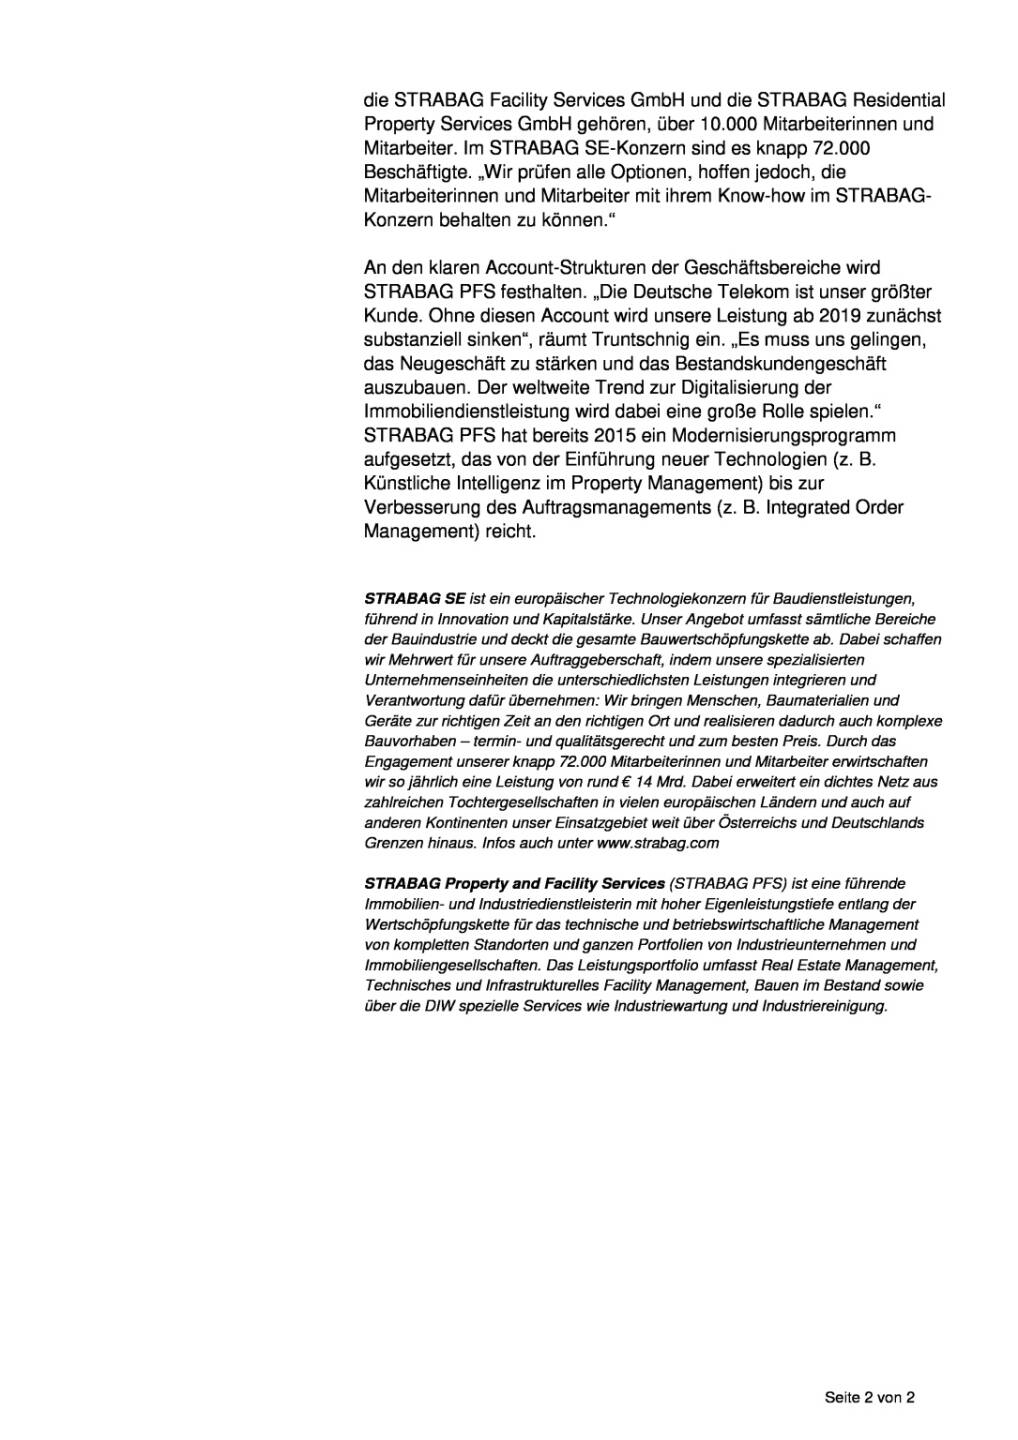 Strabag PFS vor Restrukturierung des Kundenportfolios, Seite 2/2, komplettes Dokument unter http://boerse-social.com/static/uploads/file_2369_strabag_pfs_vor_restrukturierung_des_kundenportfolios.pdf